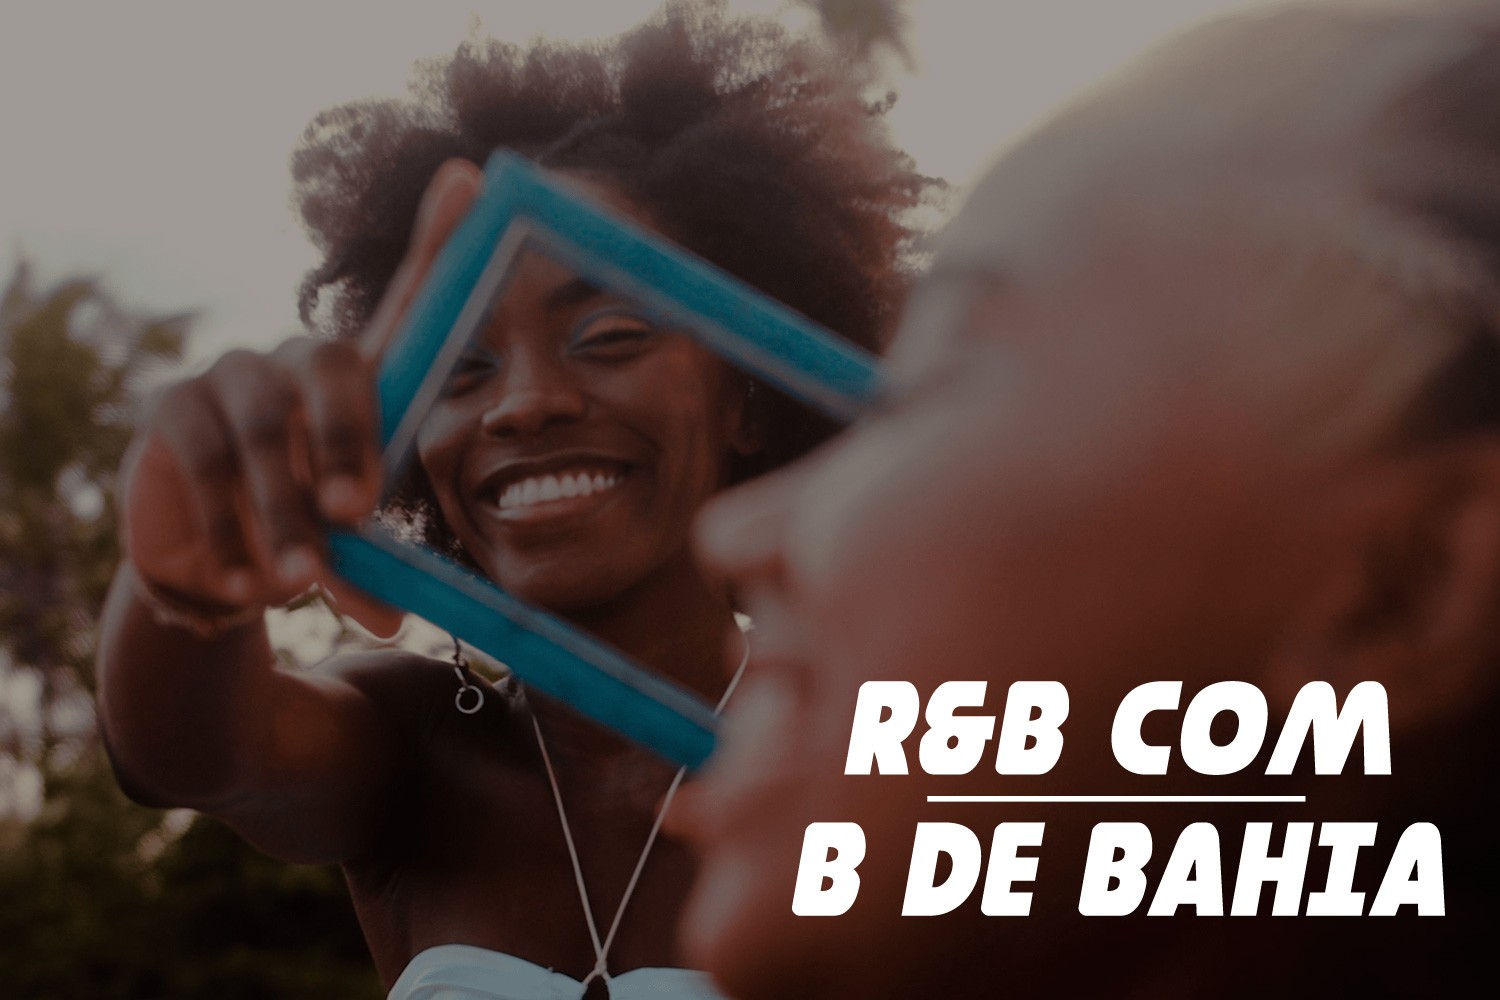 R&B com B de Bahia: uma pitada do tempero baiano no gênero estadunidense